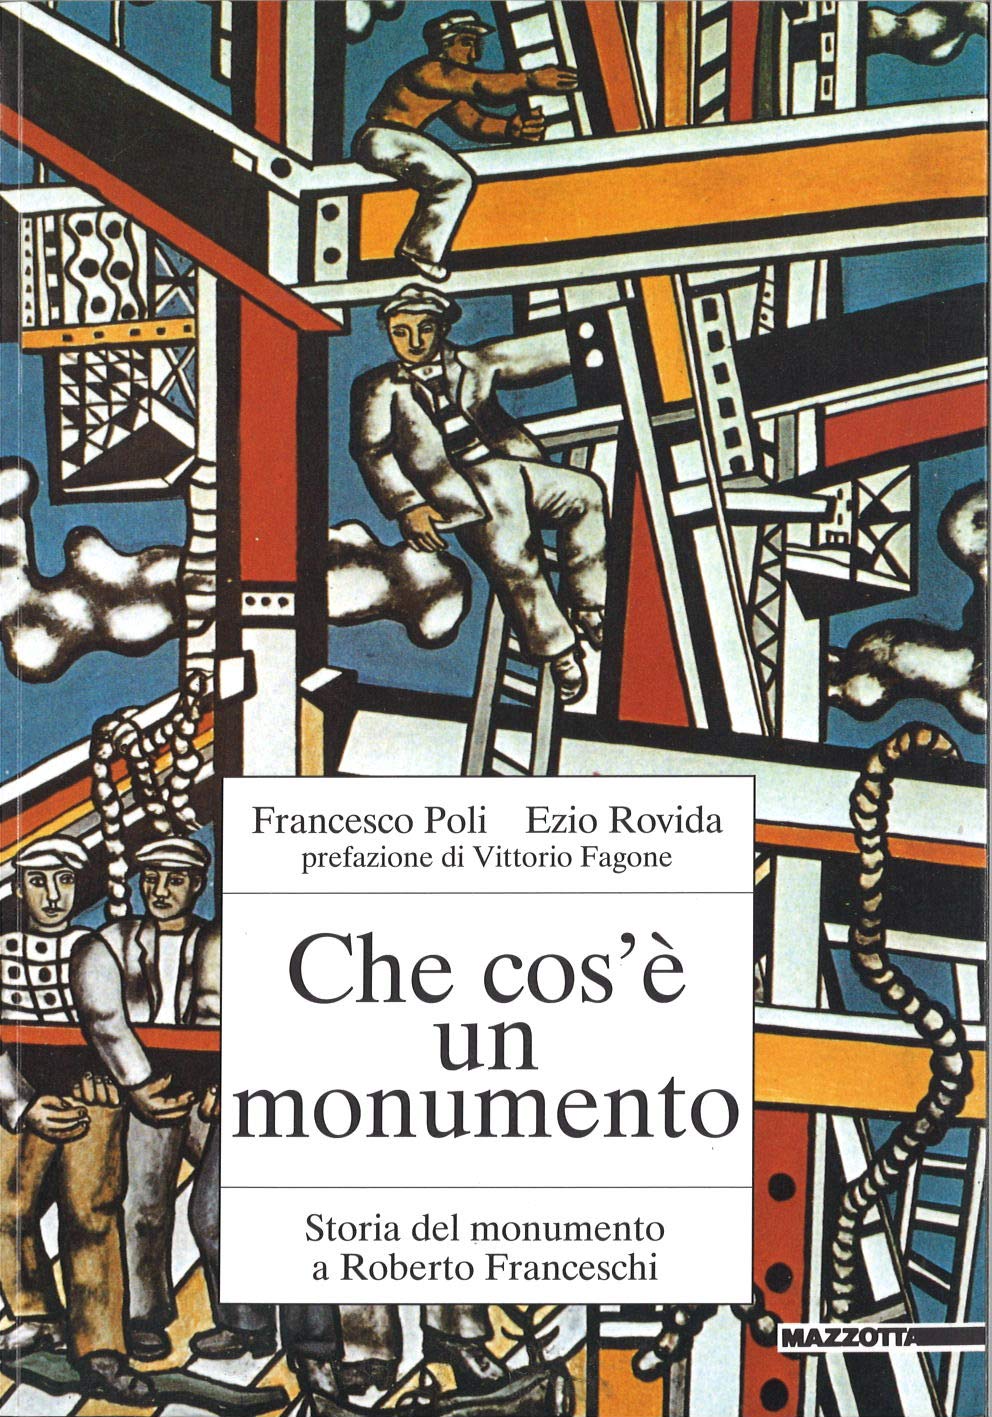 Che cos'è un monumento - Storia del monumento a Roberto Franceschi - copertina del libro di Francesco Poli e Ezio Rovida